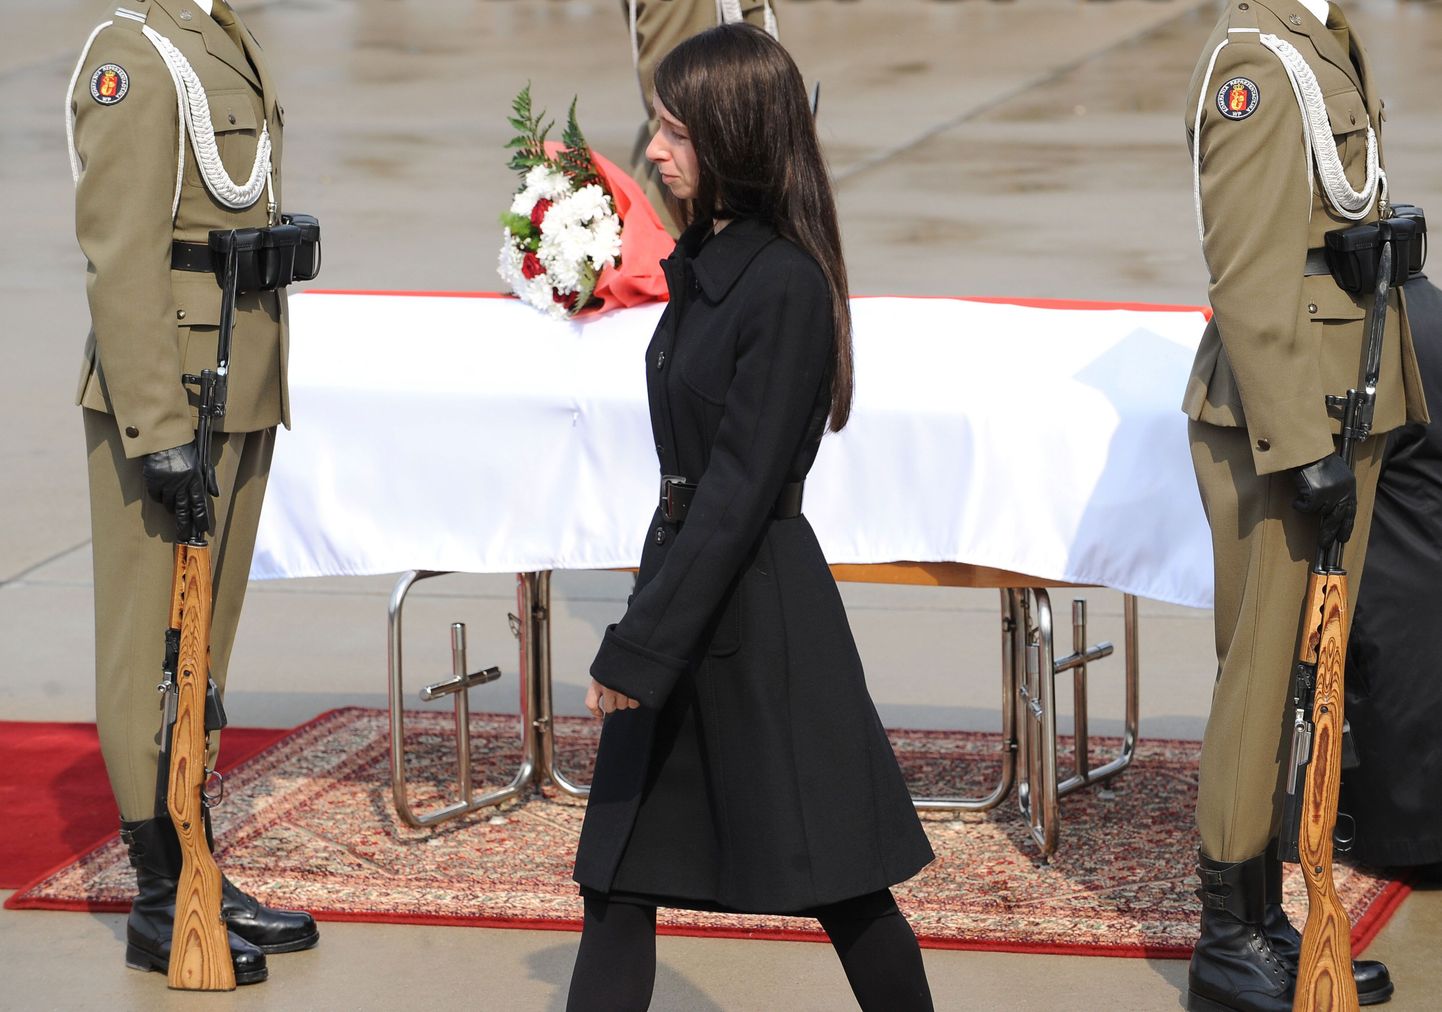 Hukkunud Poola presidendi Lech Kaczyński tütar Marta Kaczyńska oma lennuõnnetuses surnud ema Maria Kaczyńska kirstu kõrval.